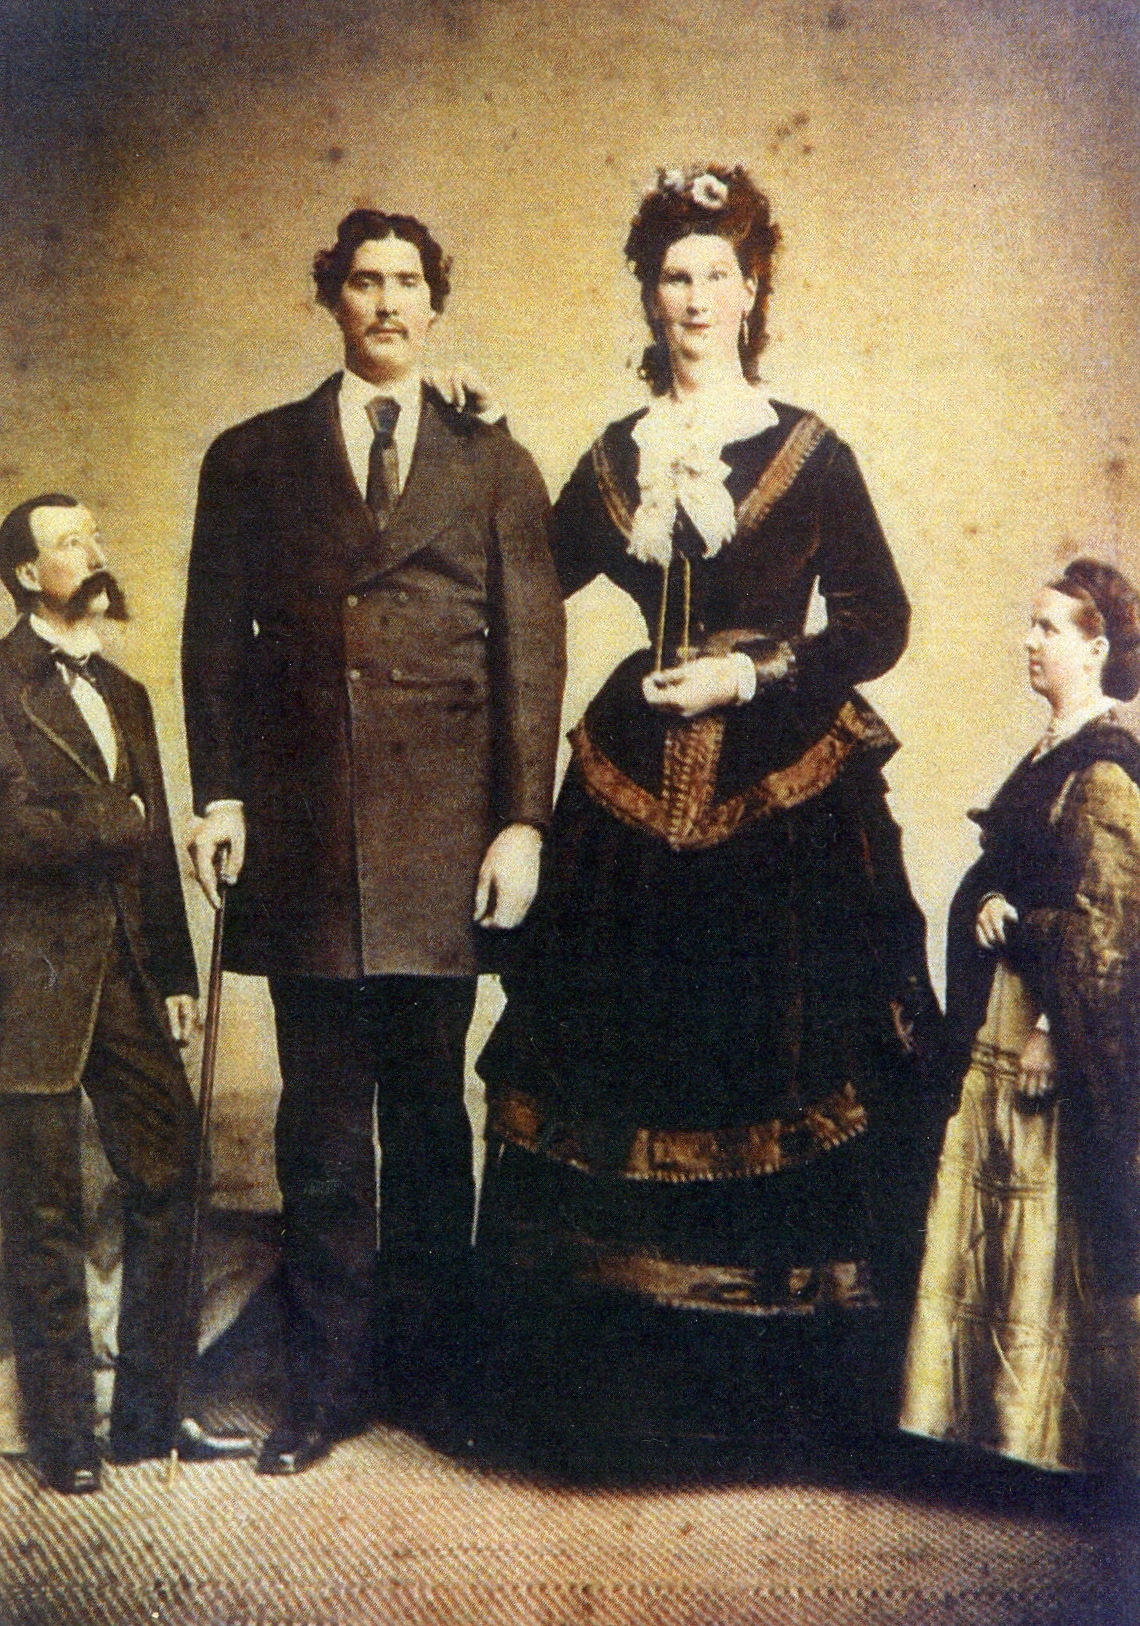 Anna Haining Bates, la mujer más alta del siglo XIX.